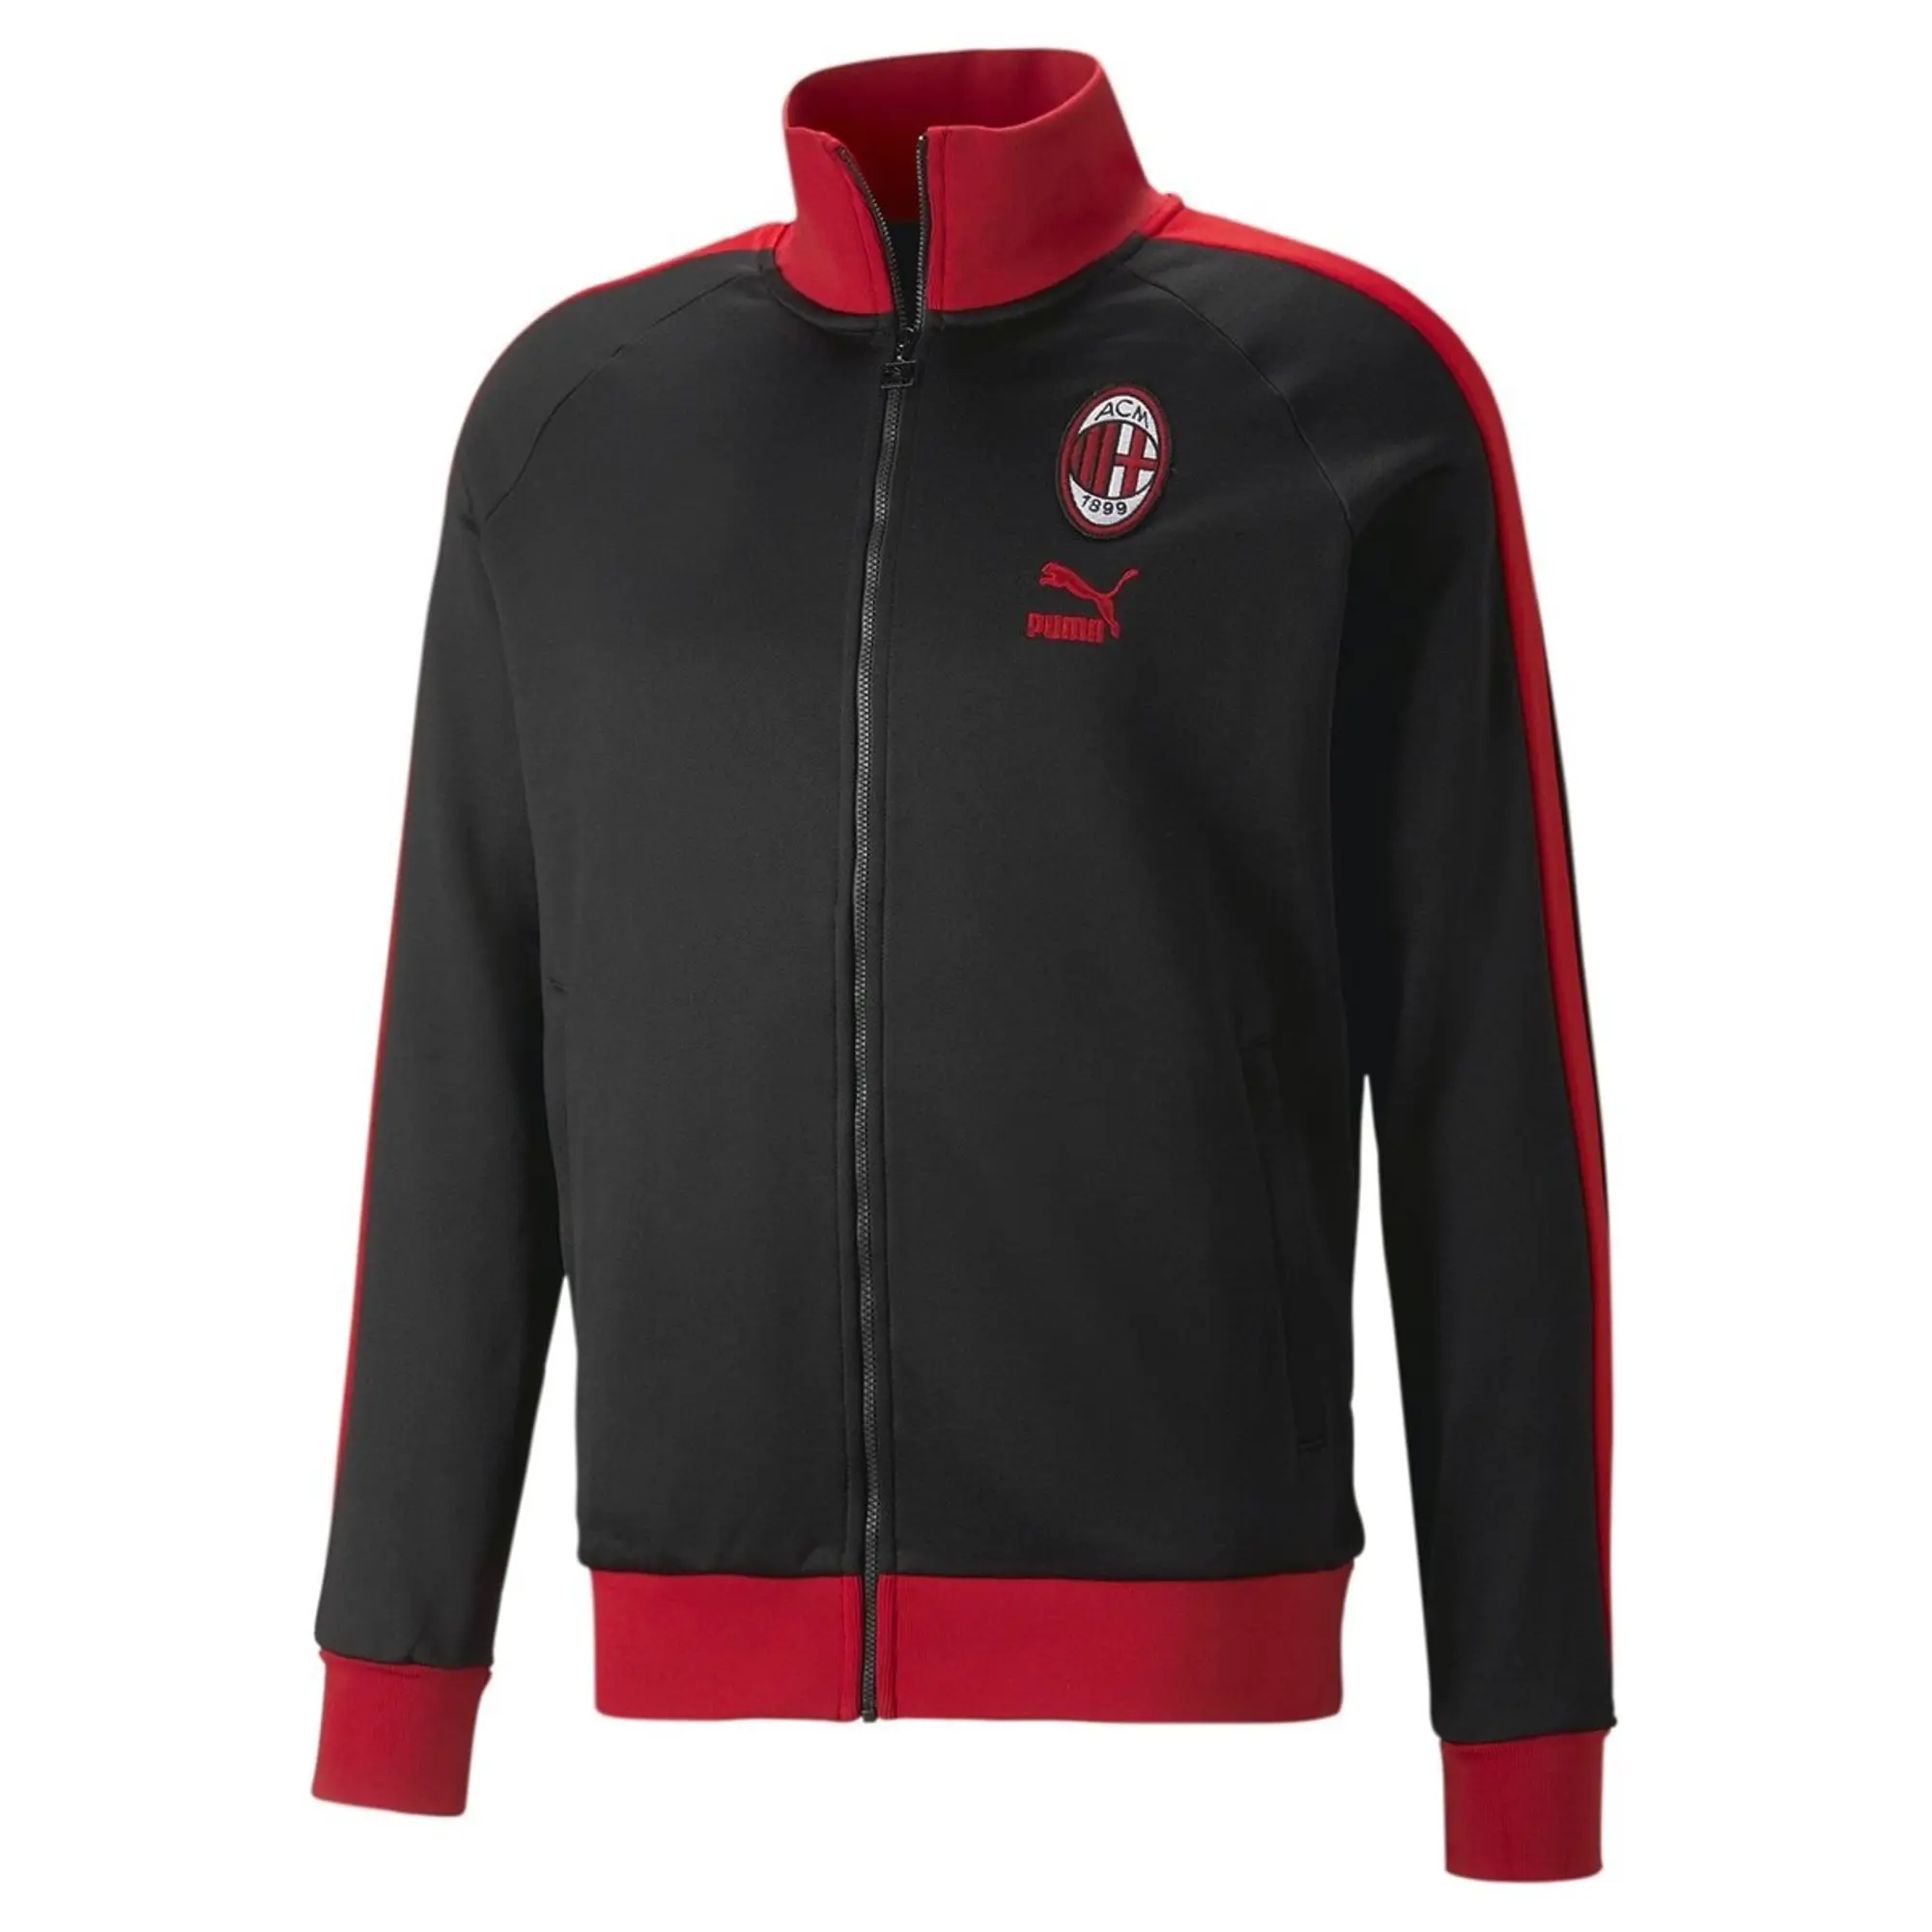 Puma AC Milan FtblHeritage T7 Track Jacket - Black